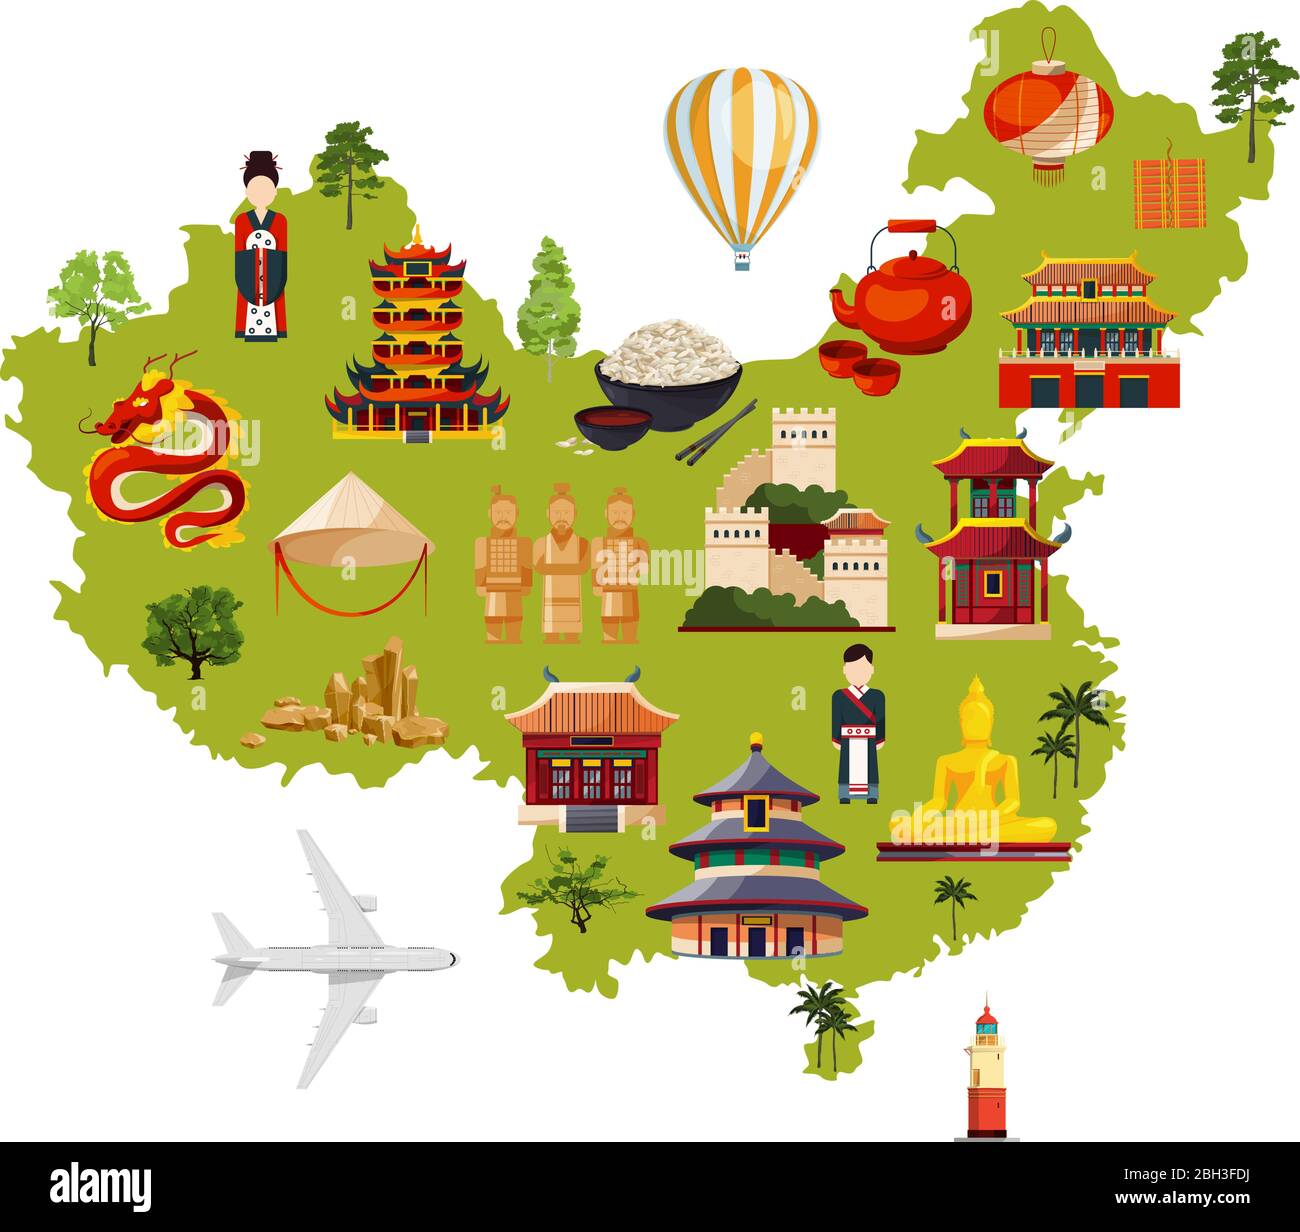 Chinesische Reiseillustration mit verschiedenen Kulturobjekten. Vektor-Karte im Cartoon-Stil. China Karte für Tourismus und Reisen Stock Vektor